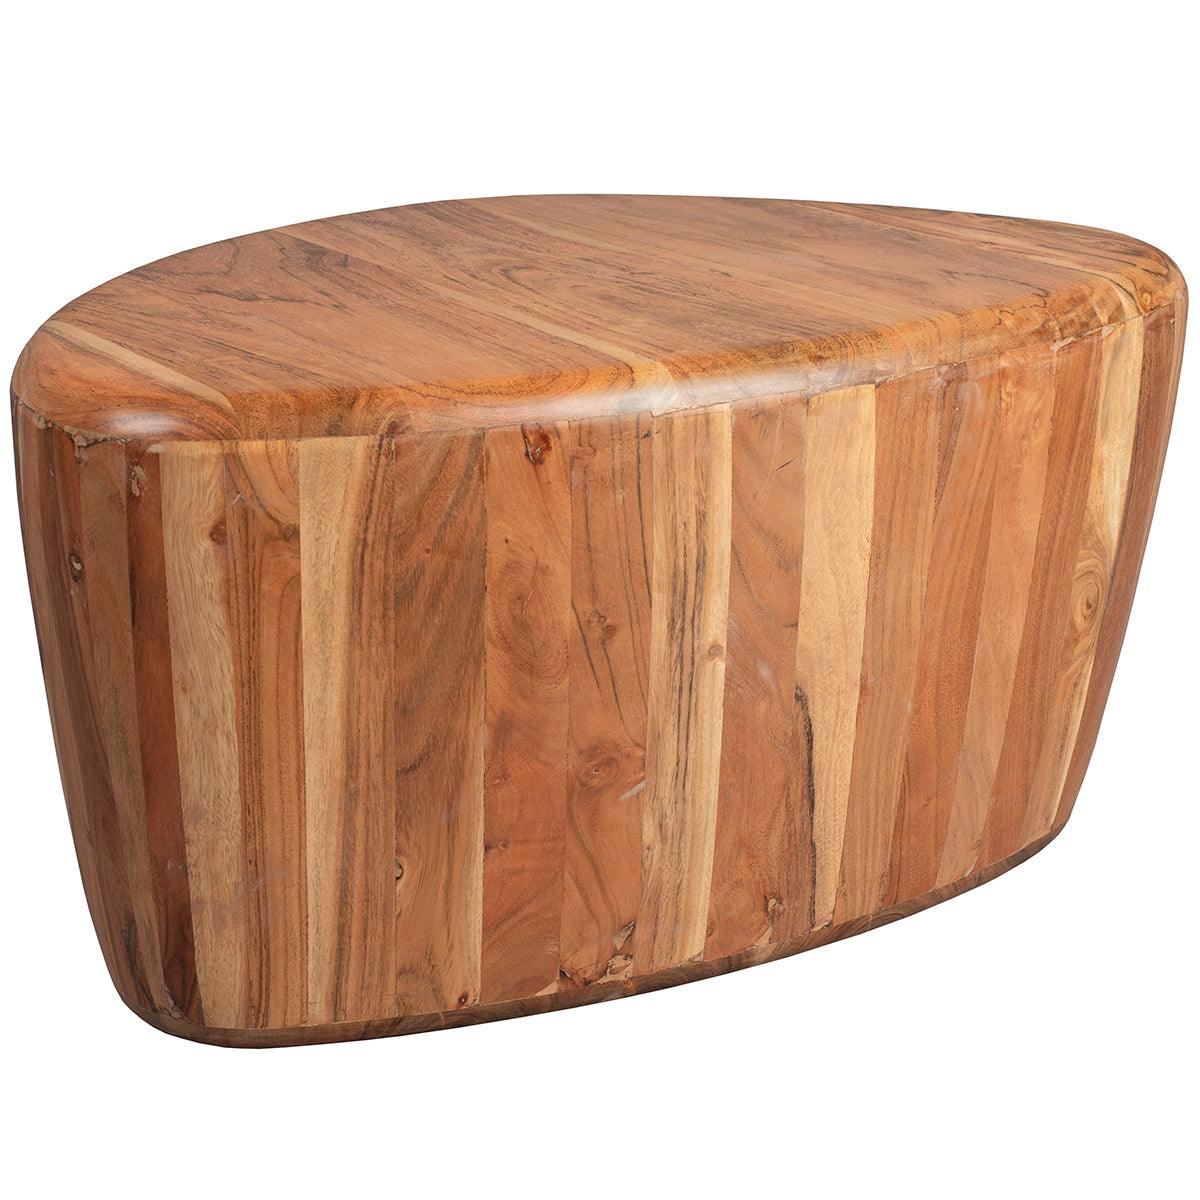 Ayla Acacia Wood Coffee Table - WOO .Design